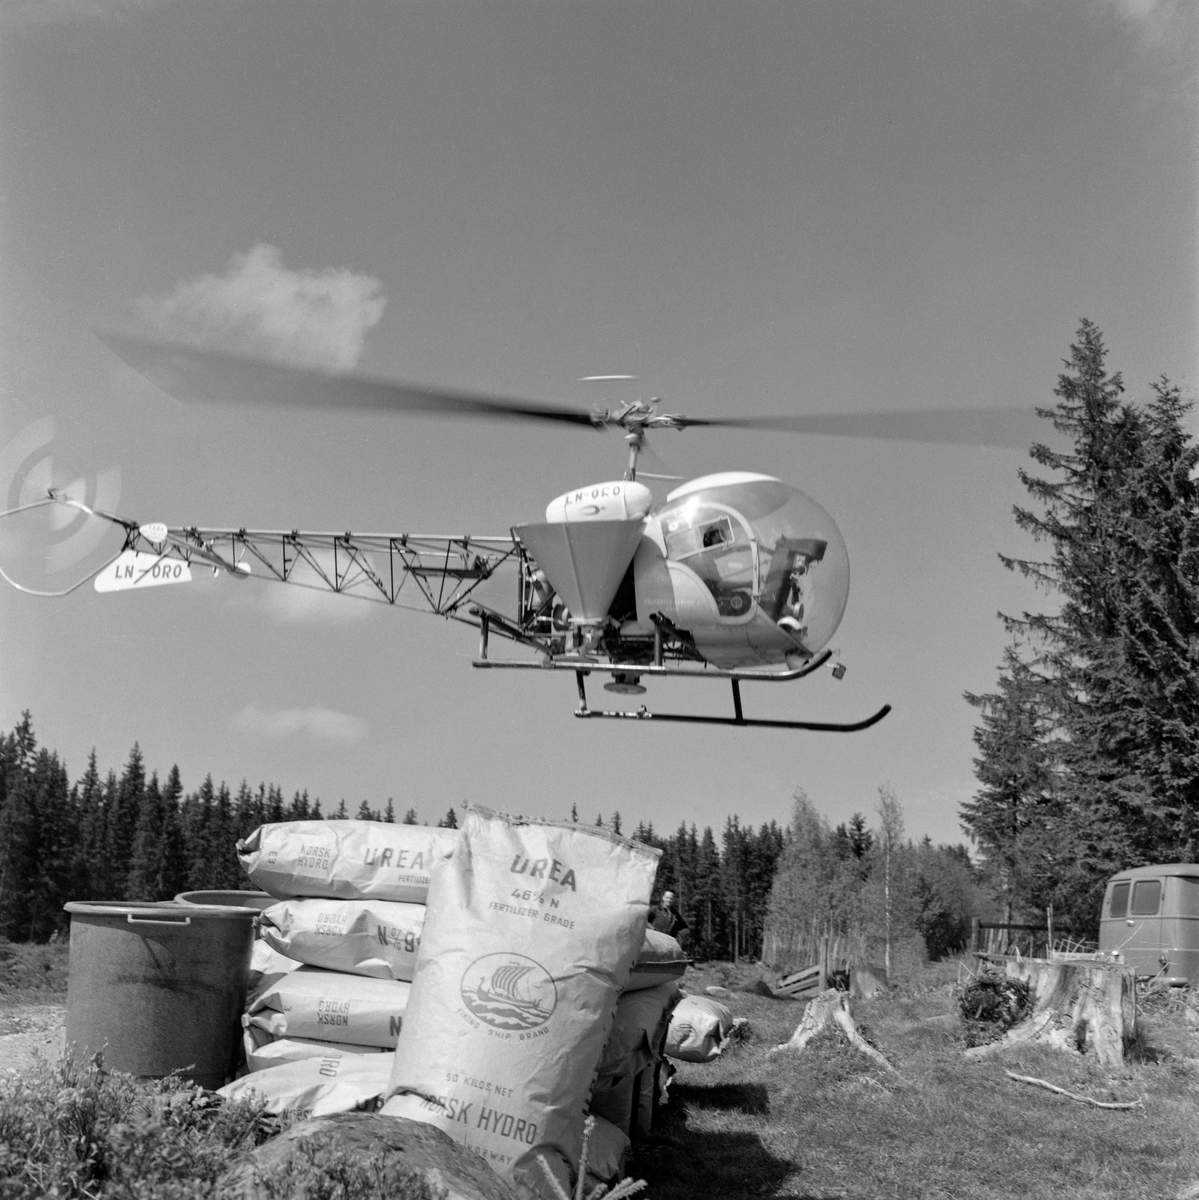 Forberedelser til gjødsling av skog fra helikopter av typen Bell 47. Fotografiet viser et helikopter med sidemontert gjødselbeholder i lav høyde over bakken over ei åpen flate i skogen. I forgrunnen ser vi en del sekker med «Urea» - ei gjødselblanding som ble utviklet spesielt for det norske skogbruket av Norsk Hydro, som et ledd i bestrebelsene for å øke tilveksten i de norske skogene med sikte på å være mest mulig sjølforsynt med råstoff til trelast- og papirindustrien. Gjødslingsaktiviteten ble orientert mot ungskogen, for det gjaldt å sikre den nevnte industrien noenlunde jevn råstofftilgang.  Skogeiersamvirket bidrog med å skaffe i traktormonterte spredeaggregater. Tidlig i 1960-åra etablerte Felleskjøpet en avdeling som tilbød gjødsling av skog fra fly.  Selskapet tok oppdrag så fremt det var snakk om sammenhengende areal på minst 100 dekar og start- og landingsmuligheter for småfly på en rett vegstrekning eller en innsjø mindre enn tre kilometer fra bestandet. Da dette fotografiet ble tatt var tydeligvis også helikopterspredning blitt et aktuelt alternativ. Landbruksdepartementet åpnet muligheter for finansiering av gjødslinga gjennom skogavgiftsordningen. Landbruksdepartementet åpnet muligheter for finansiering av gjødslinga gjennom skogavgiftsordningen. Med et slikt apparat på plass ble 90 000 dekar norsk skogsmark gjødslet i 1967. Det var primært store skogeiendommer som ble gjødslet, og forkjemperne for denne virksomheten så på eiendomsstrukturen i norsk skogbruk, med mange små teiger, som en begrensende faktor. Det viste seg imidlertid etter hvert at prognosene for den volumtilveksten skogen skulle få etter gjødsling hadde vært vel optimistiske. Derfor avtok denne aktiviteten utover i 1970-åra. Skoggjødsling fikk en renessanse i 2016. Da ble det kjent at staten gav tilskudd som dekte 40 prosent av gjødslingskostnadene i ensaldret, eldre barskog, bestand som skulle avvirkes i et tiårsperspektiv. Bakgrunnen for denne skogpolitiske kursendringa var ikke bare en vilje til å gi næringa økonomiske stimulanser – det handlet også om at skog i god vekst er en viktig faktor i arbeidet med å begrense de klimaproblemene som skapes ved store utslipp av karbondioksid i atmosfæren som følge av utstakt bruk av fossile energikilder.